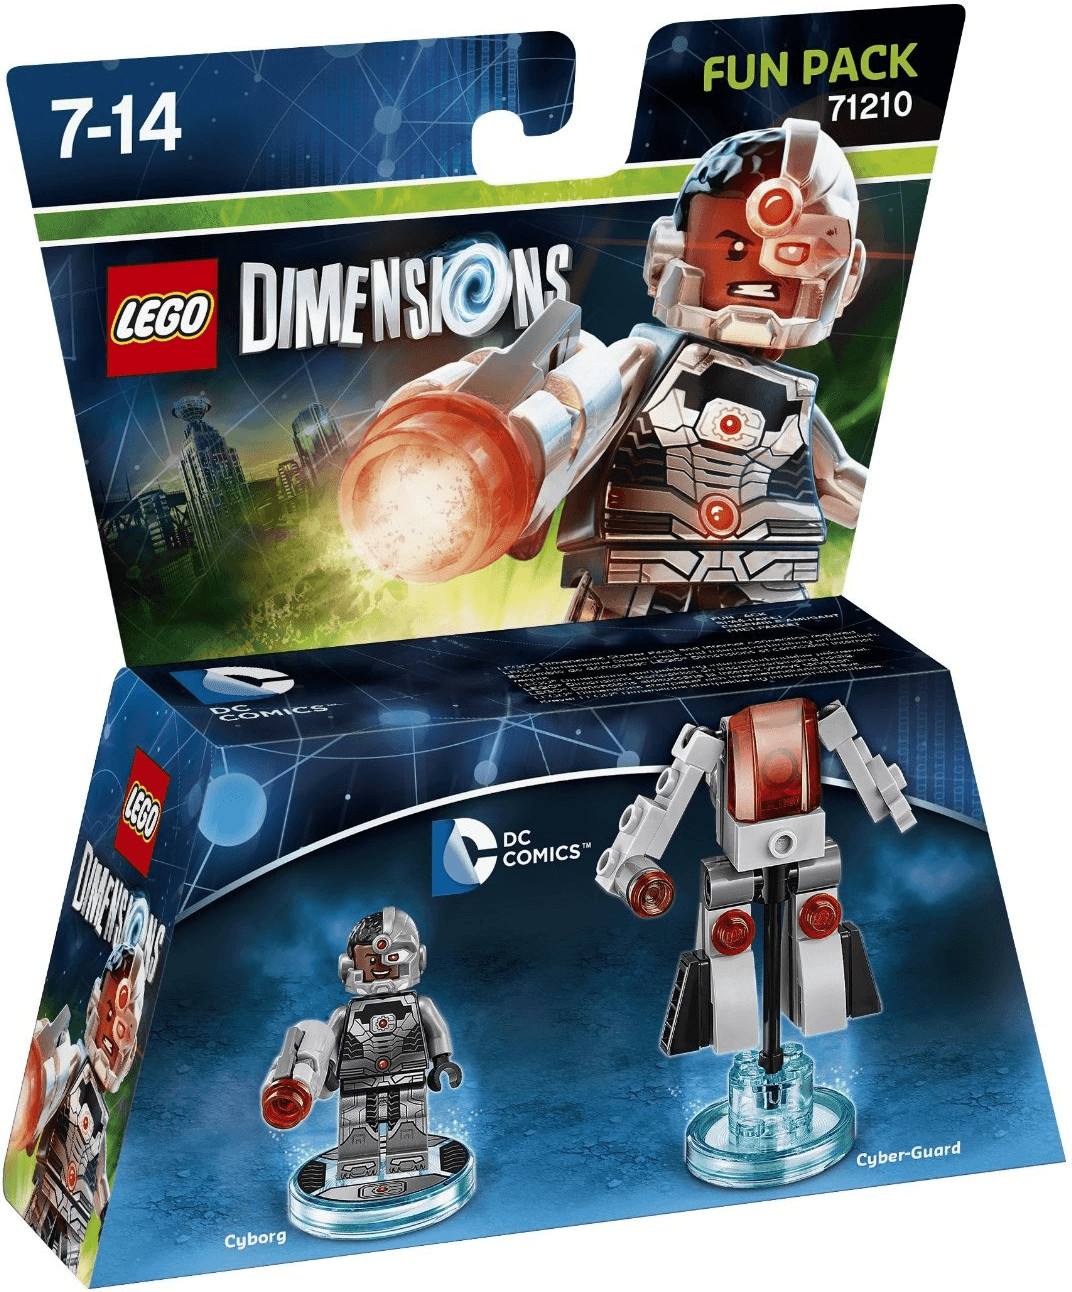 LEGO Dimensions: Fun Pack - Cyborg